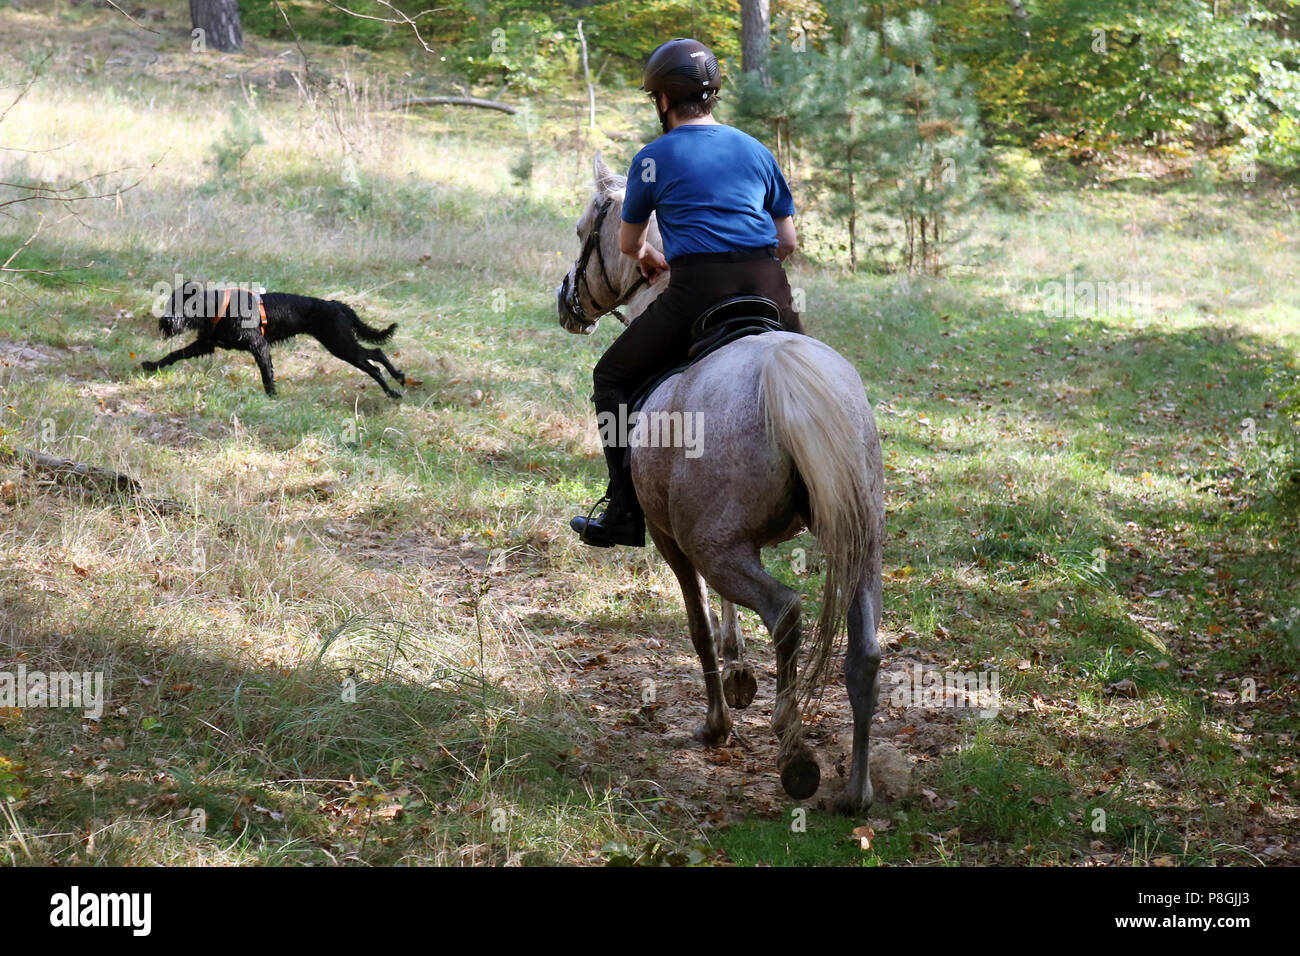 Zernikow, épouse répond à un tuyau d'chien pendant une promenade dans les bois Banque D'Images